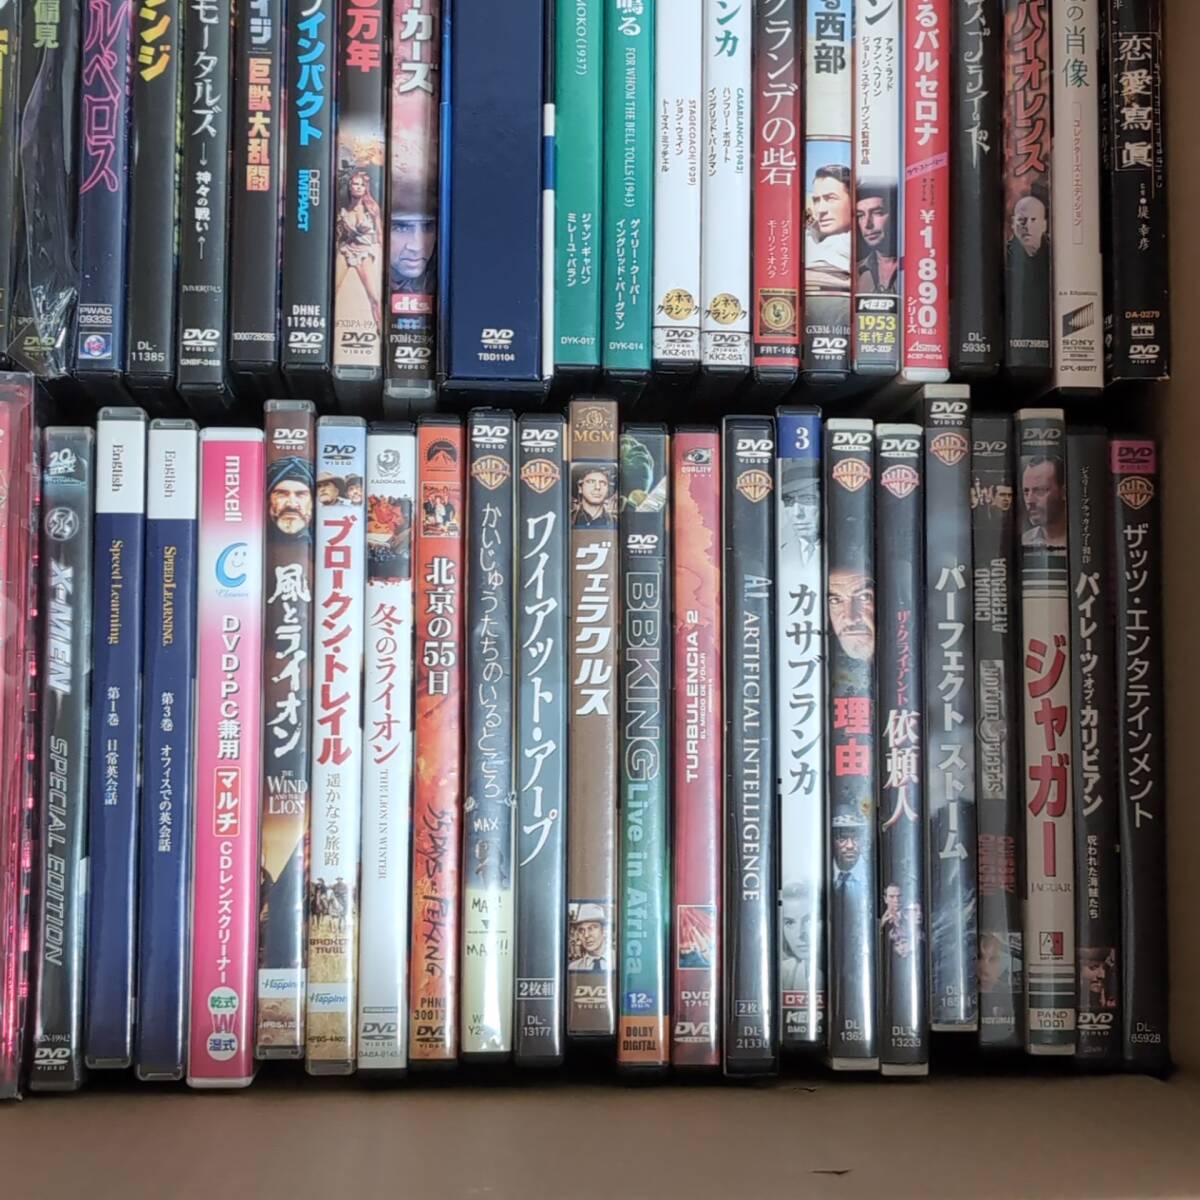 【DVD】 Blu-ray 洋画 大量 まとめ 沢山 100枚以上セット ブルーレイ ハリウッド BOX多数 フレンド 名作 スパイダーマン 風と共に去りぬ 点_画像5